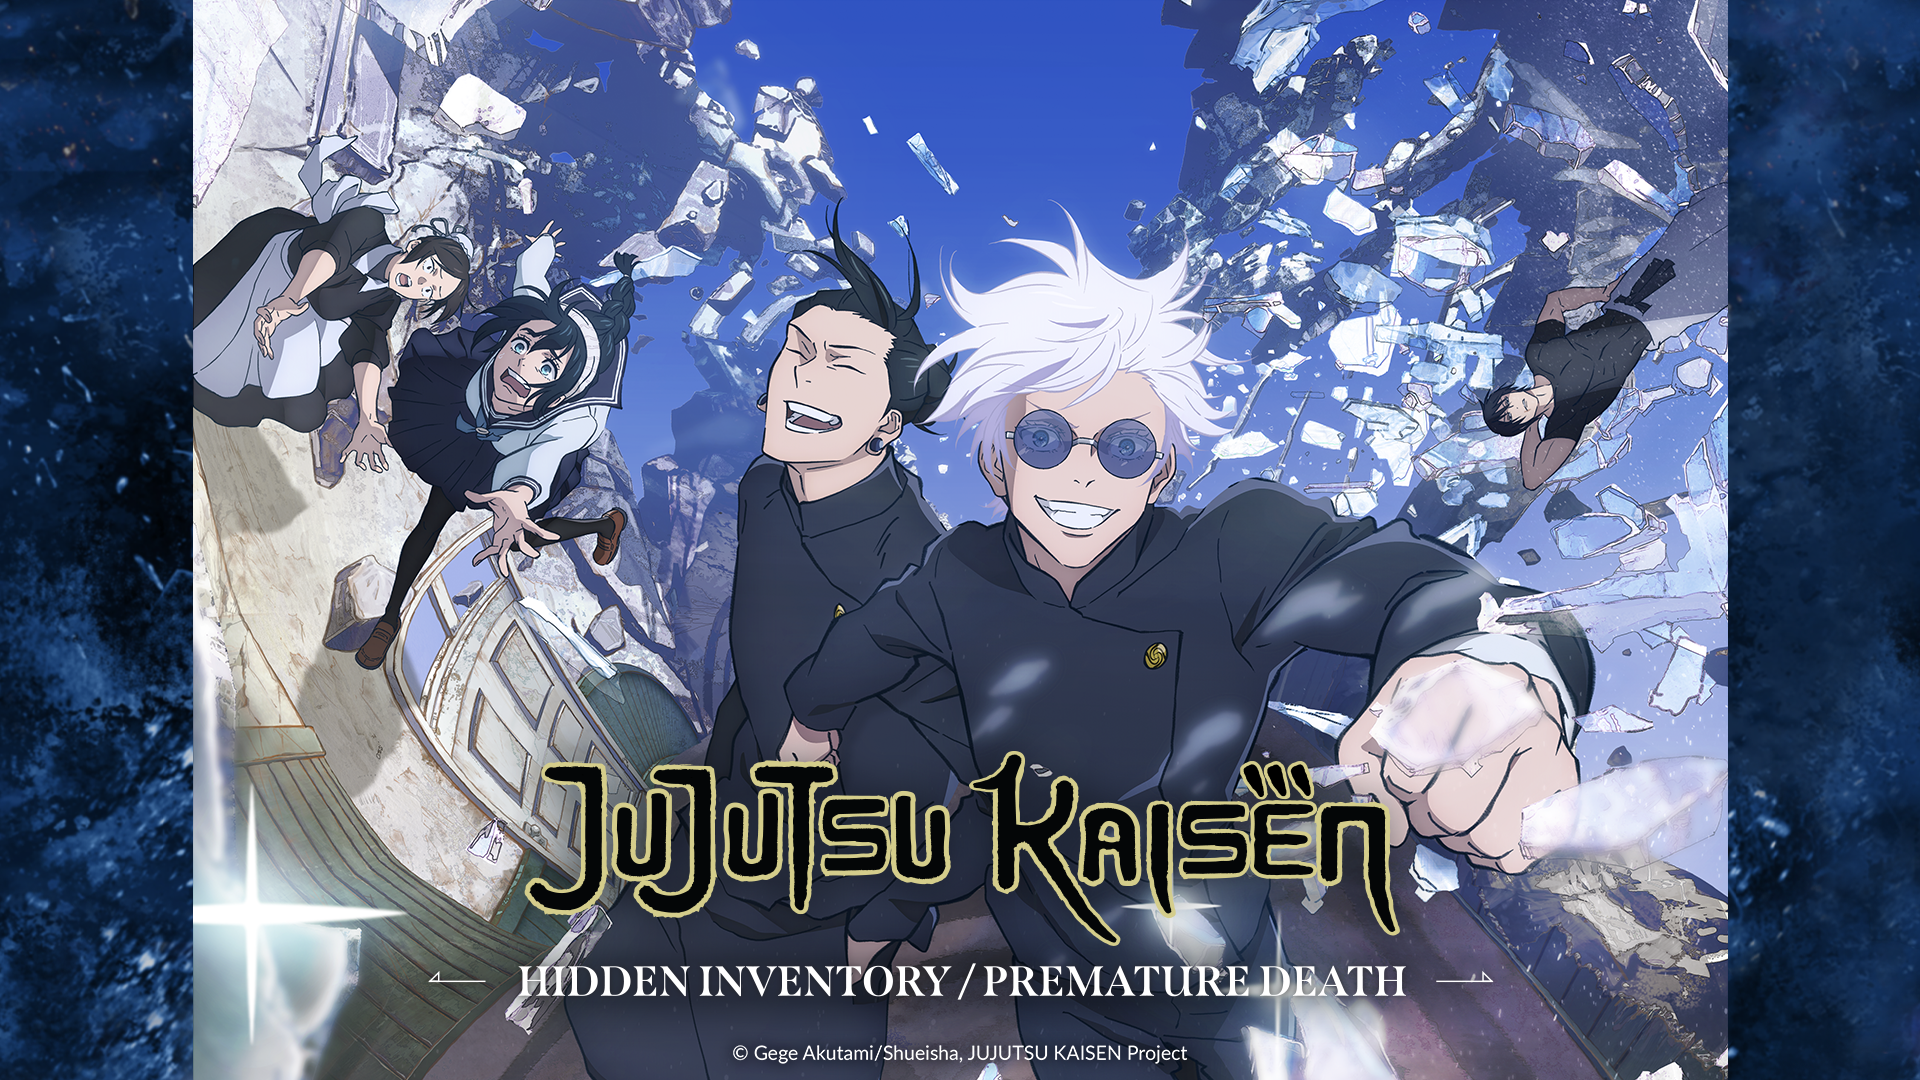 MyAnimeList on X: News: Jujutsu Kaisen Season 2 announces